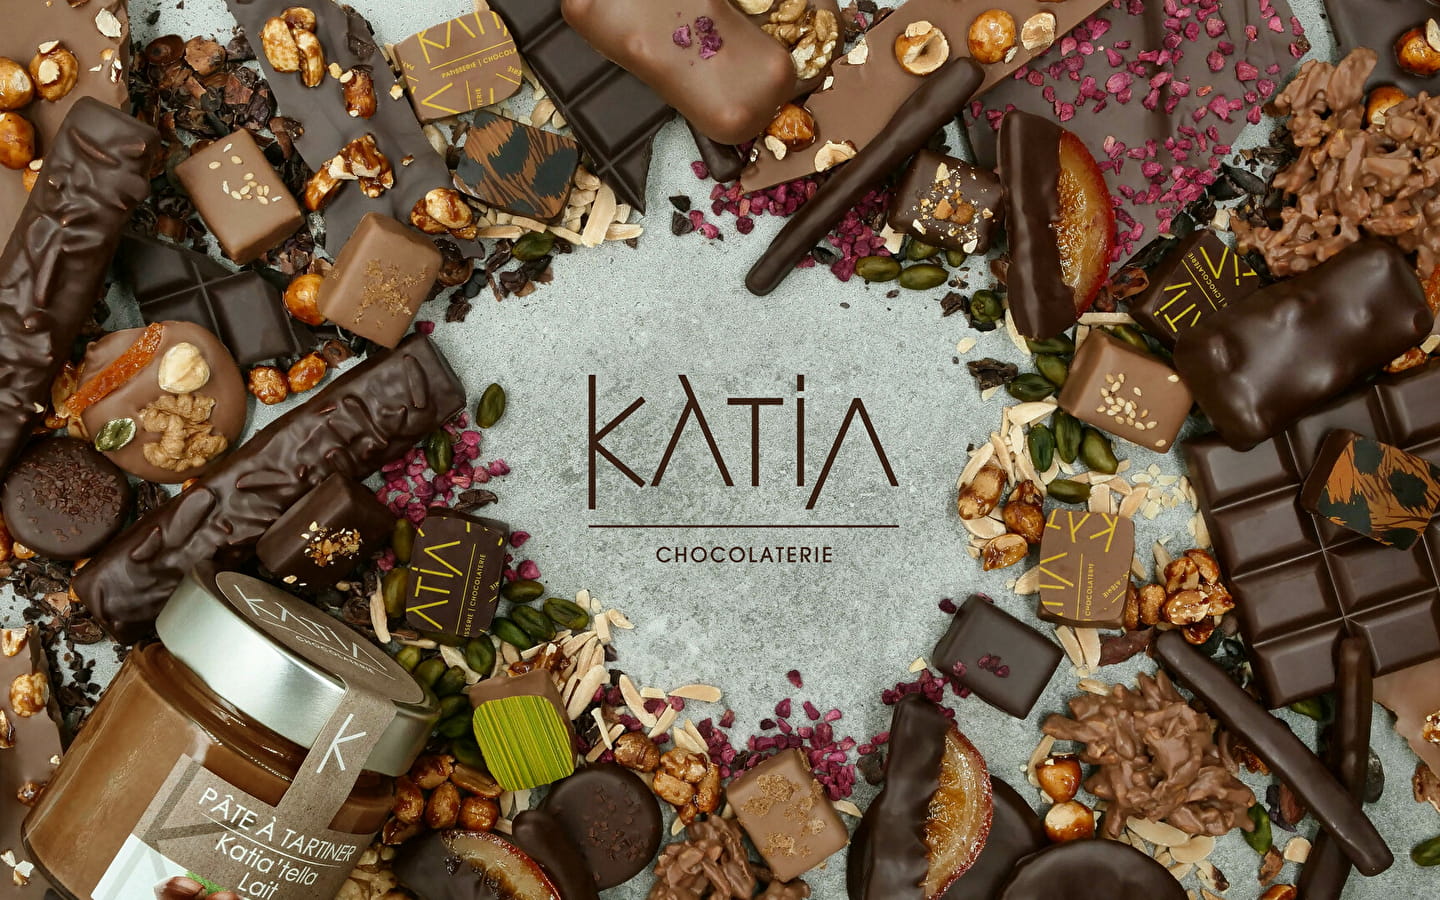 Katia Patisserie Chocolaterie